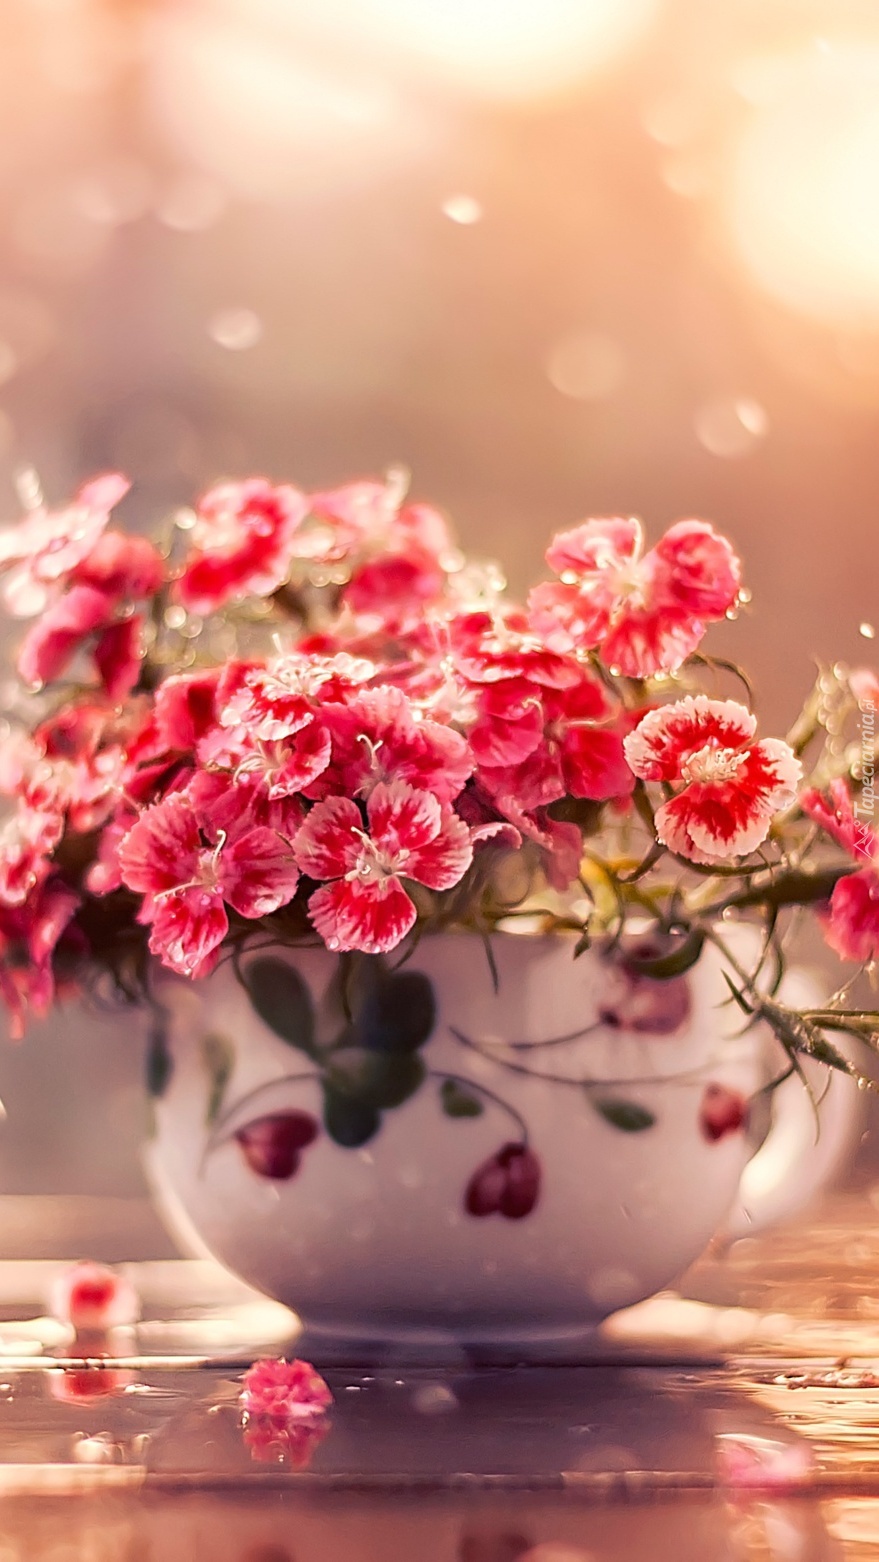 Bukiecik czerwonych kwiatków w wazoniku